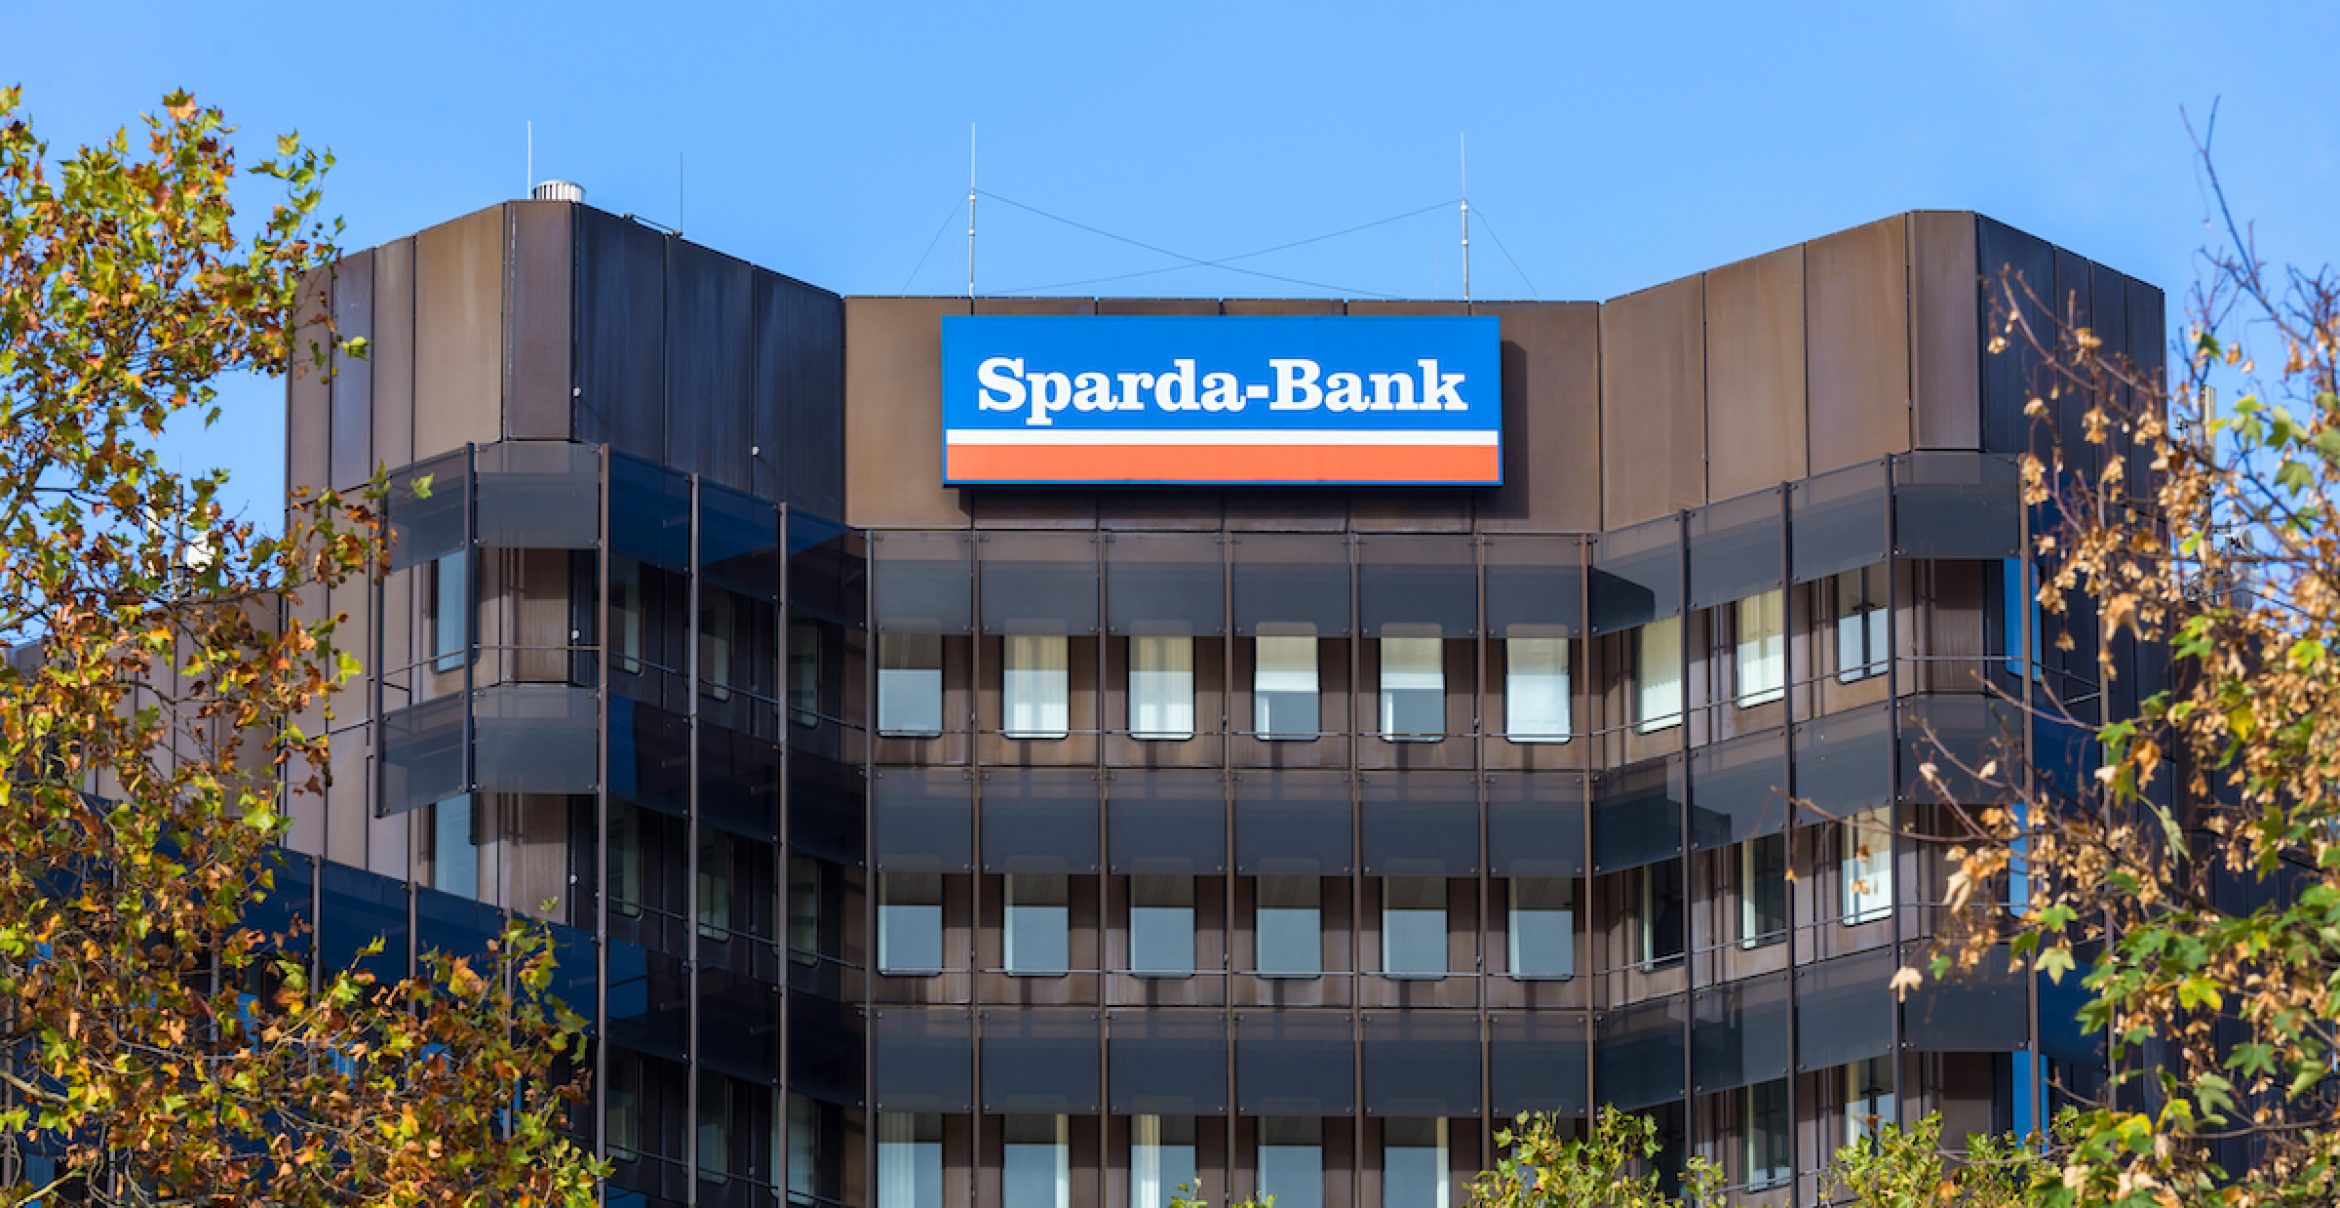 Vorreiter im Finanzwesen: Sparda-Bank führt Homeoffice und 35-Stunden-Woche ein